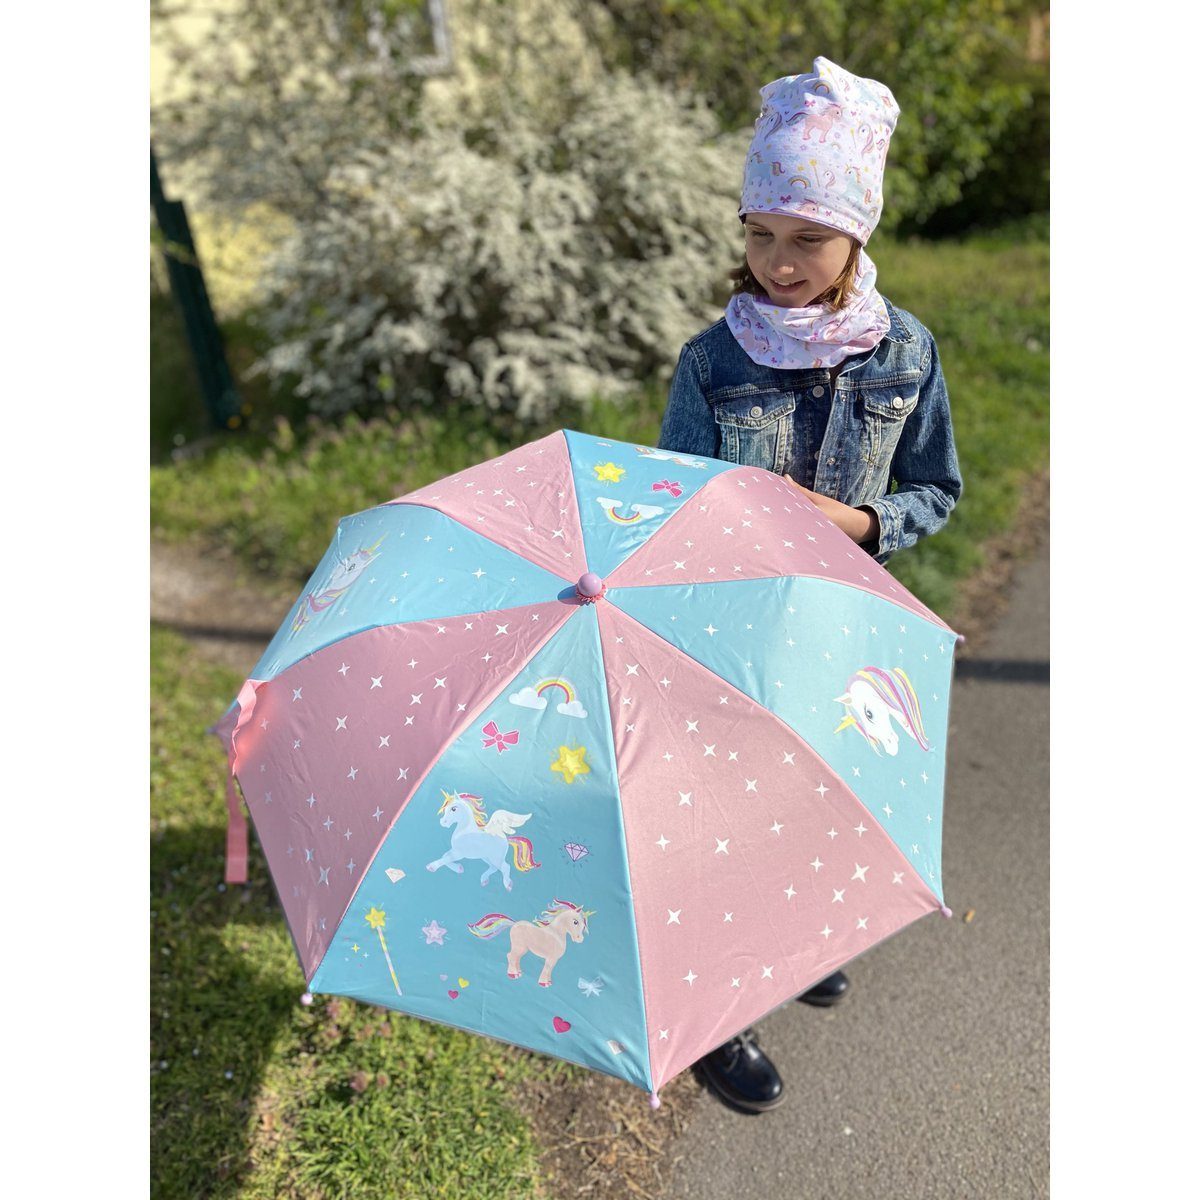 HECKBO Taschenregenschirm Kinder Farbe Einhorn, bei die Regenschirm Magic wechselt - Regen